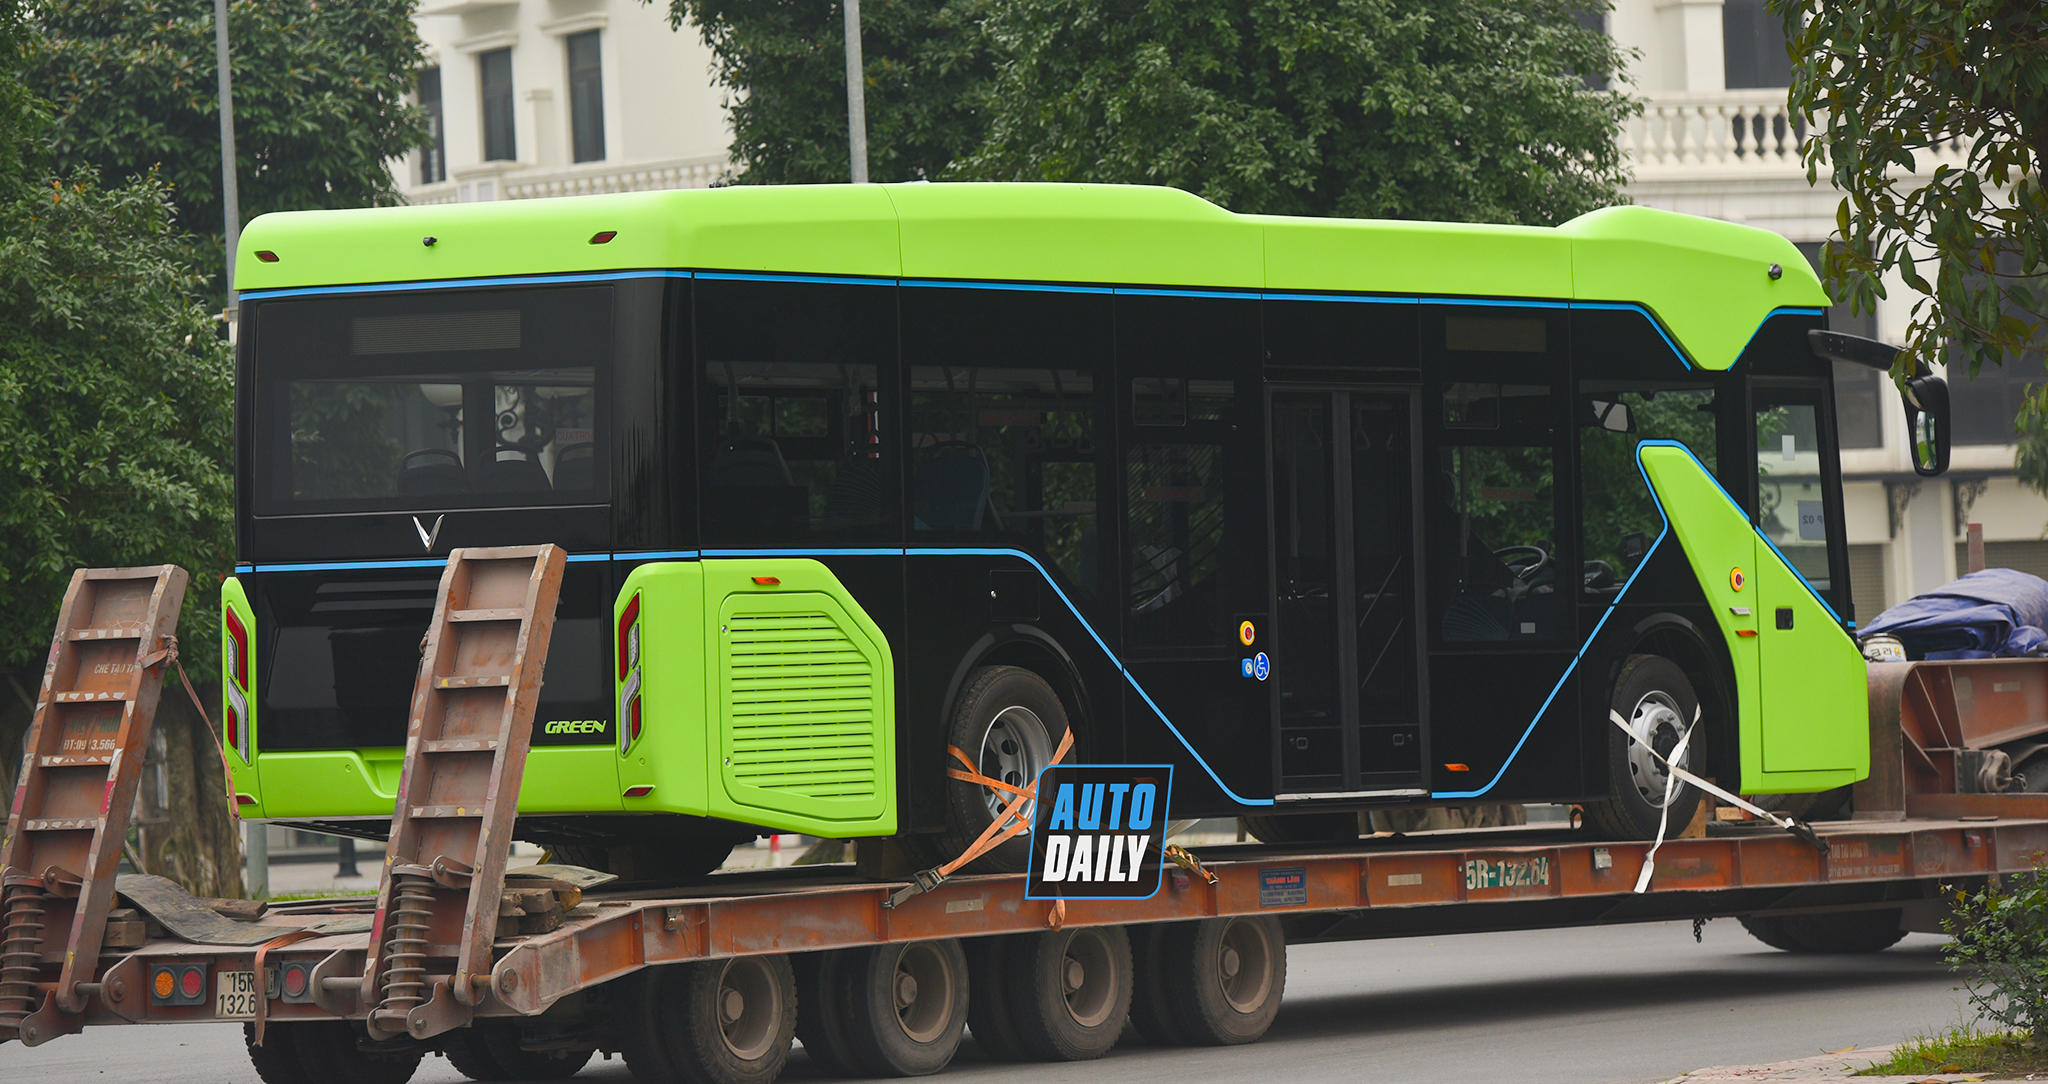 Chùm ảnh loạt xe Bus điện VinFast có mặt tại Hà Nội, sẵn sàng chạy thí điểm dsc-3883-copy.jpg